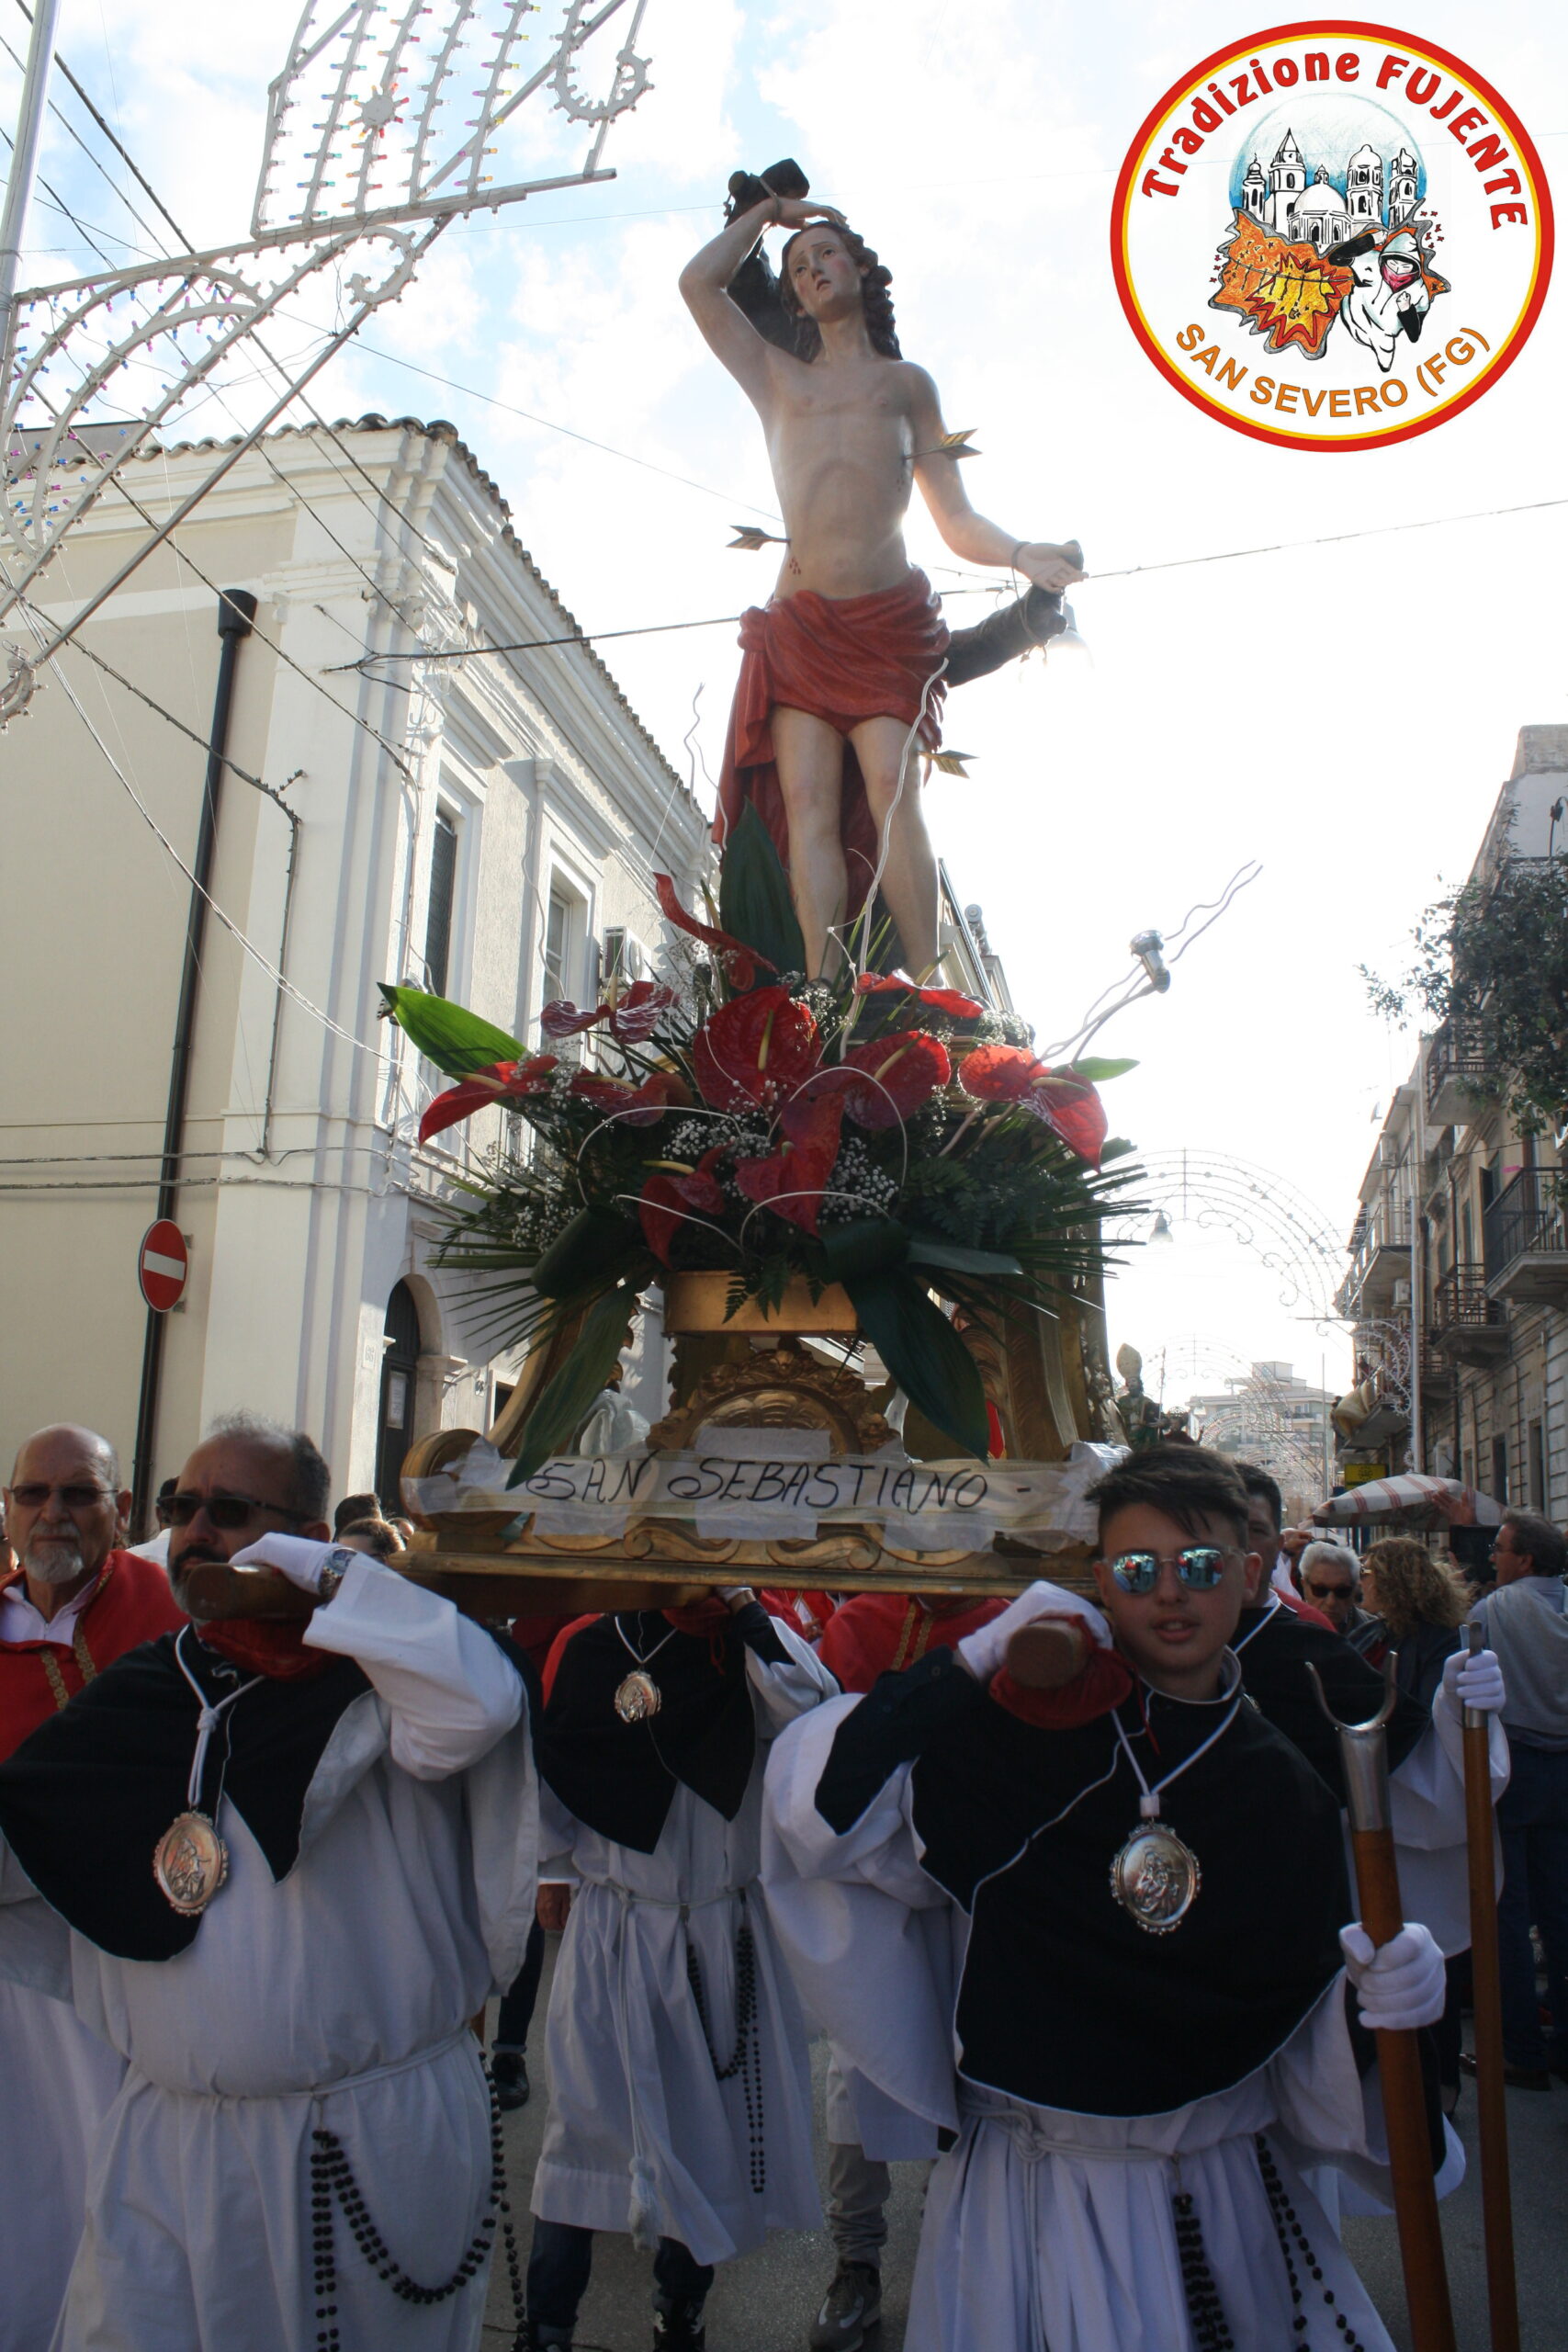 Festa di San Sebastiano Martire 2019: il programma della festa liturgica